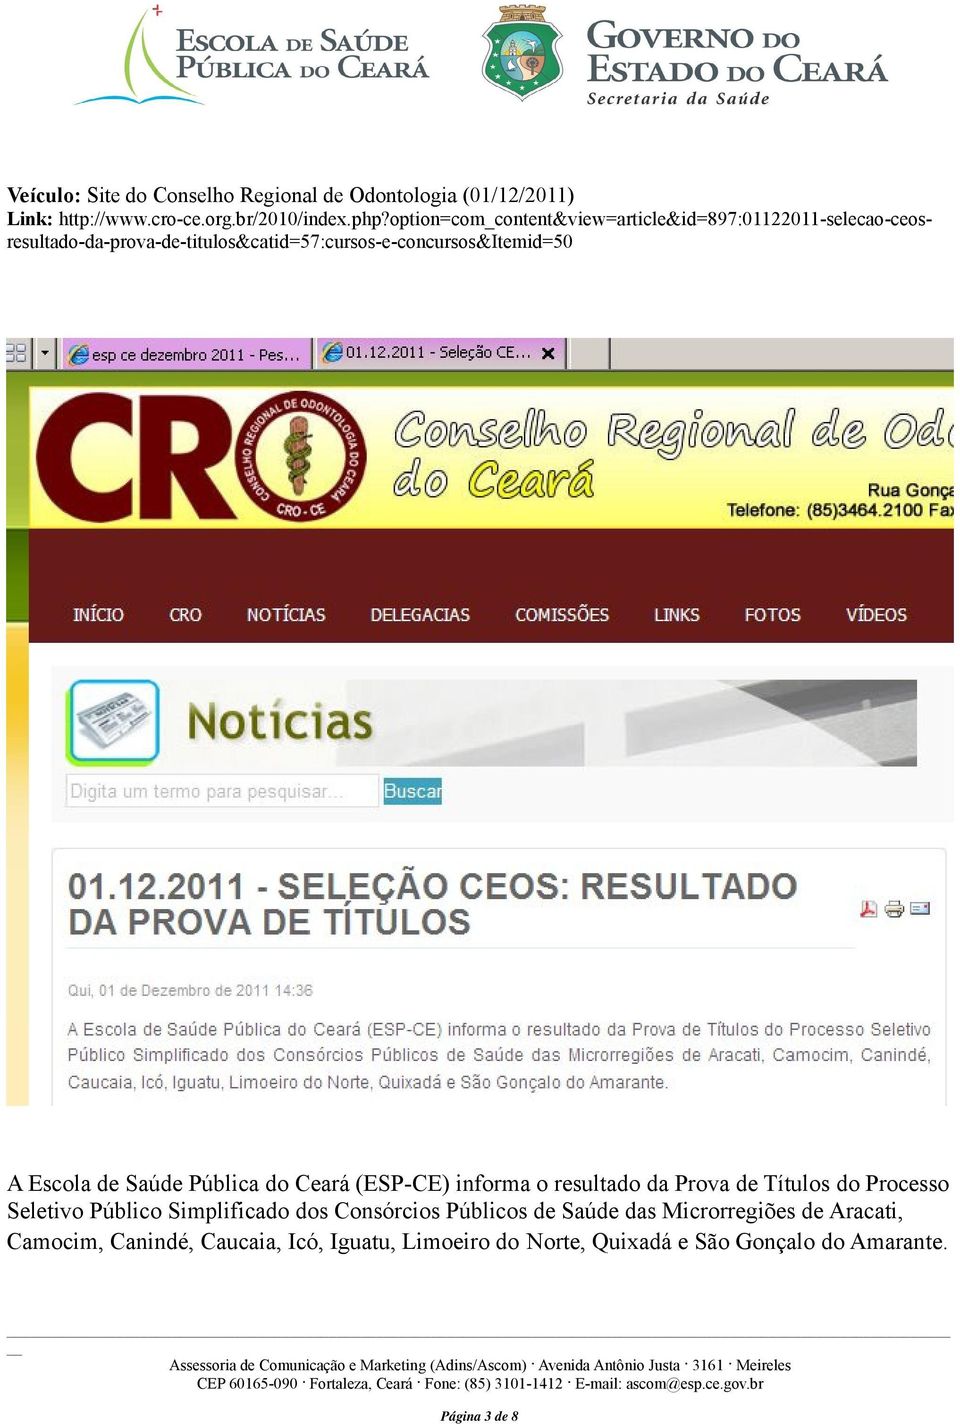 Escola de Saúde Pública do Ceará (ESP-CE) informa o resultado da Prova de Títulos do Processo Seletivo Público Simplificado dos